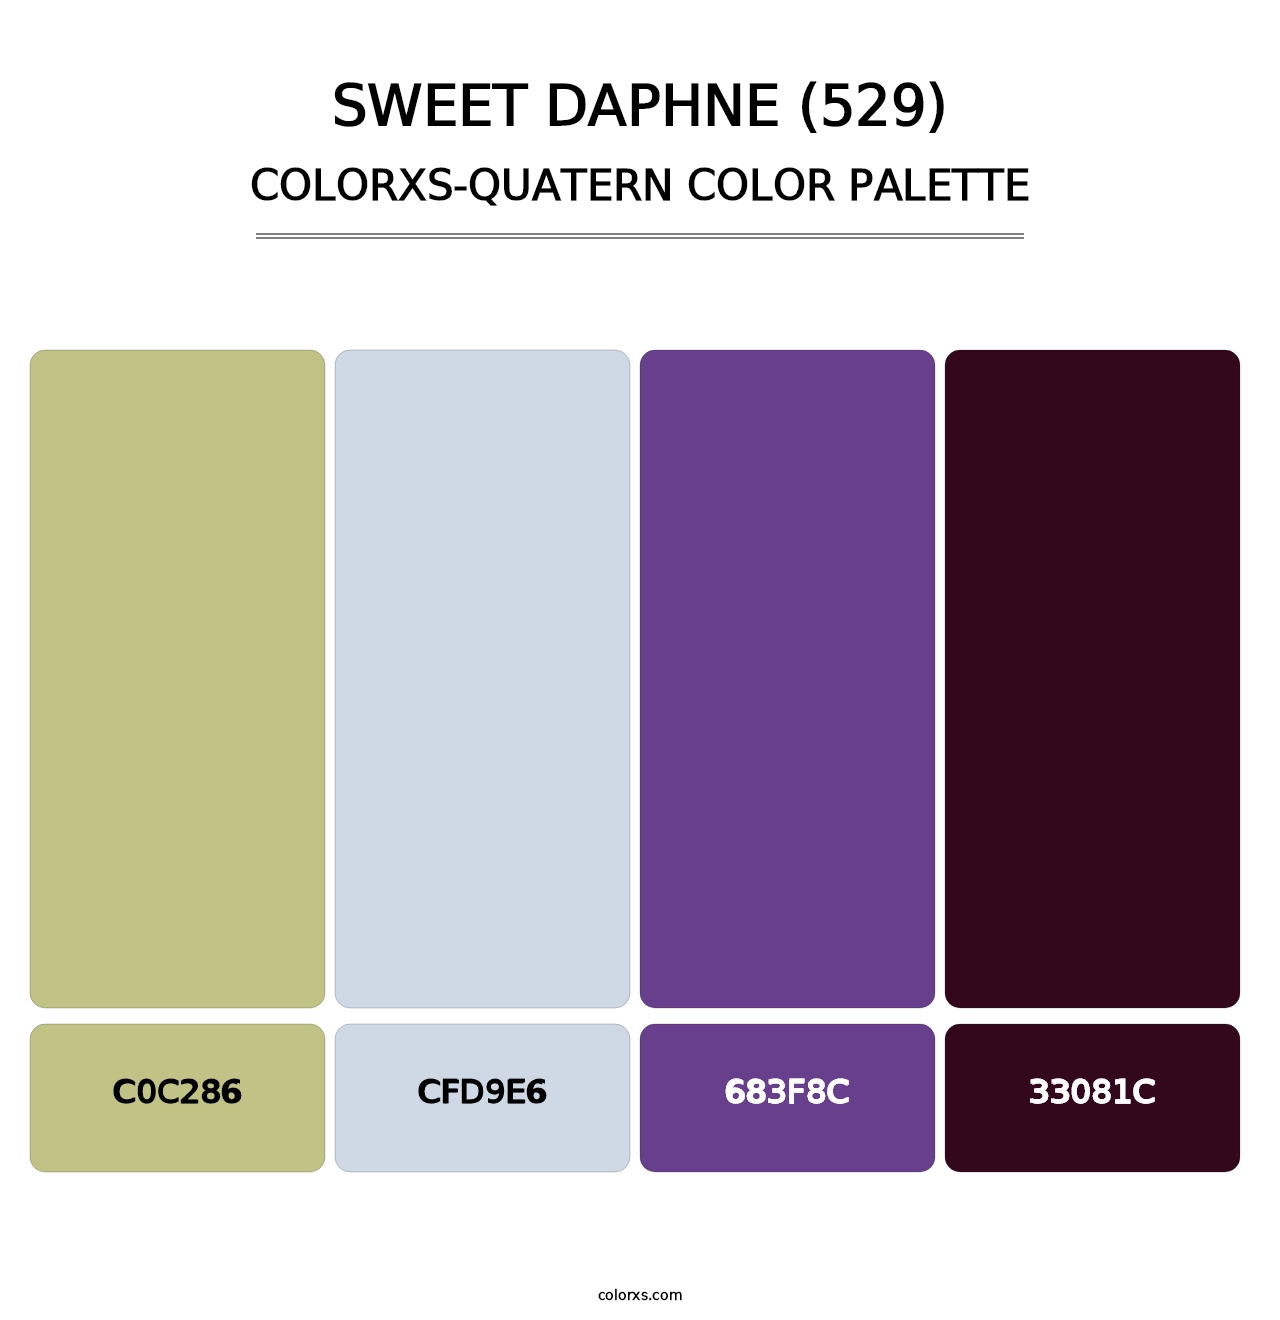 Sweet Daphne (529) - Colorxs Quatern Palette